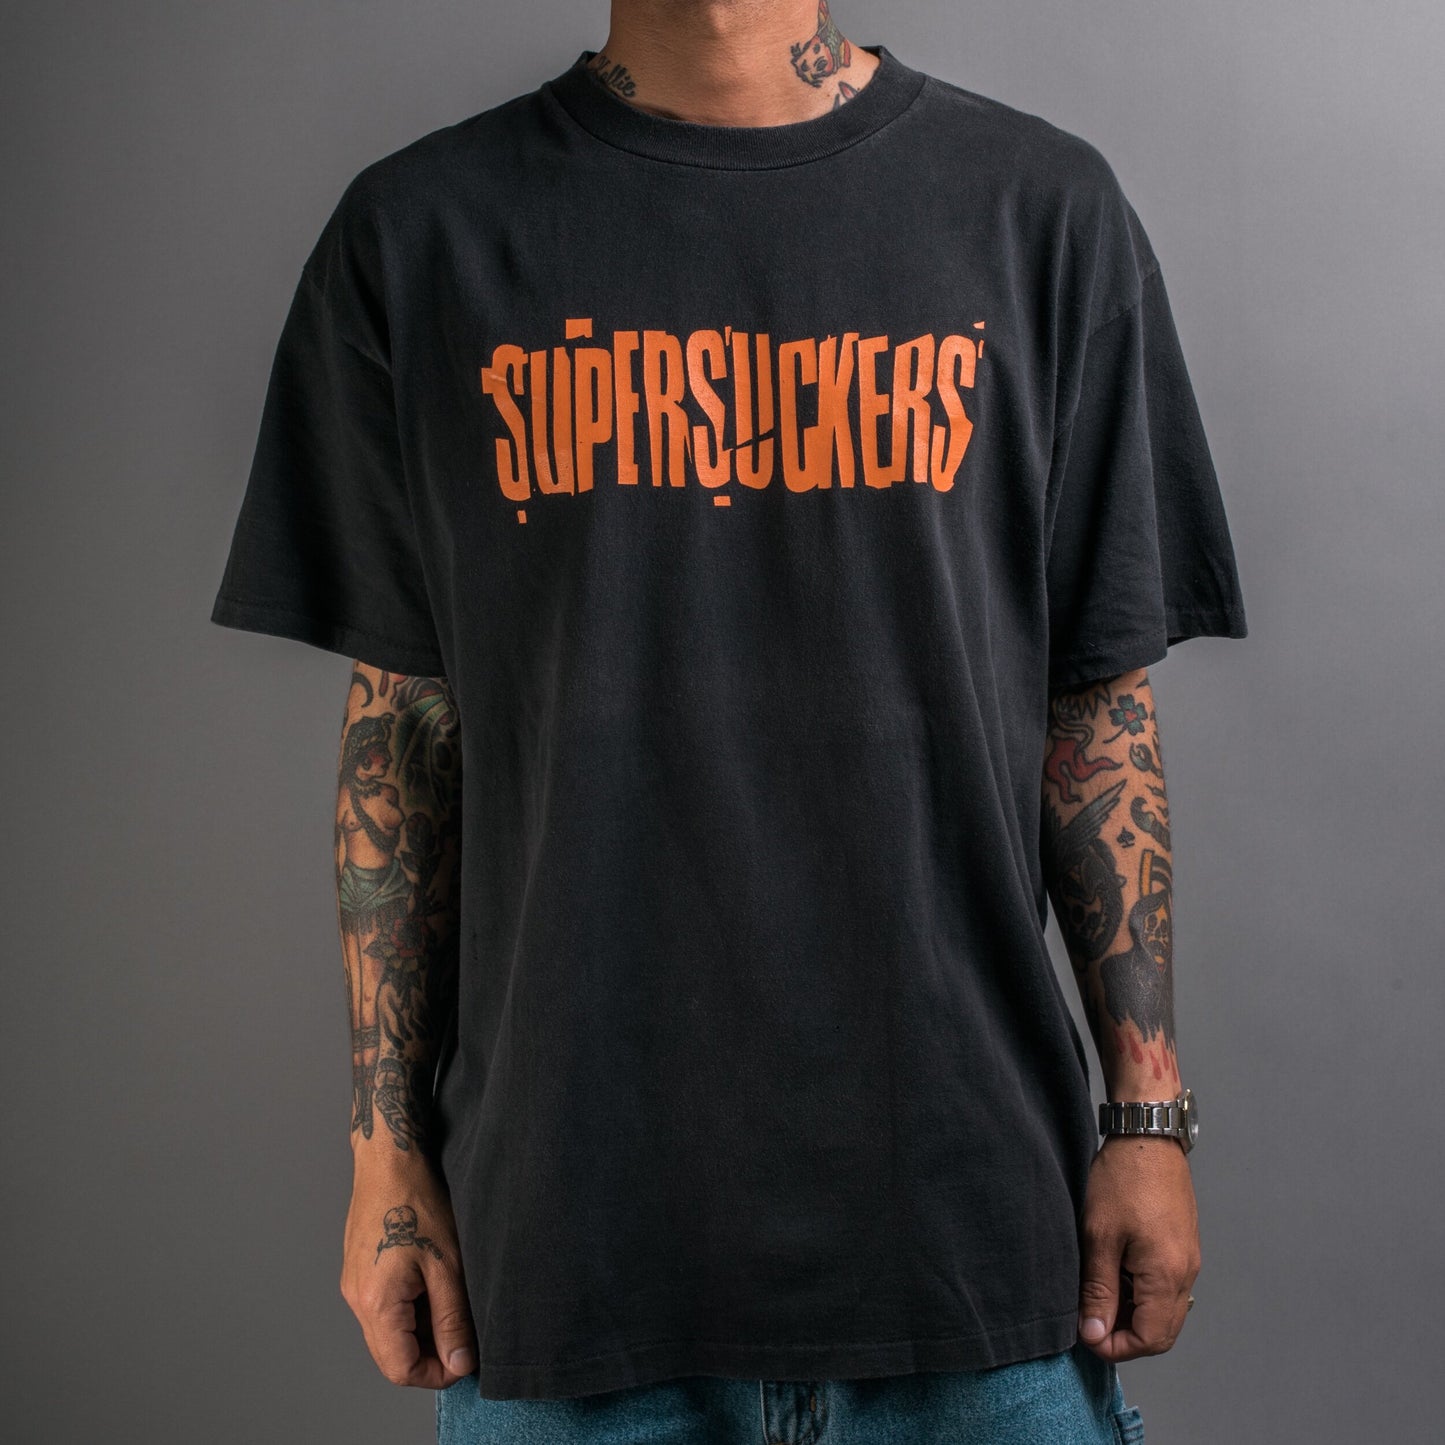 Vintage 90’s Supersuckers T-Shirt